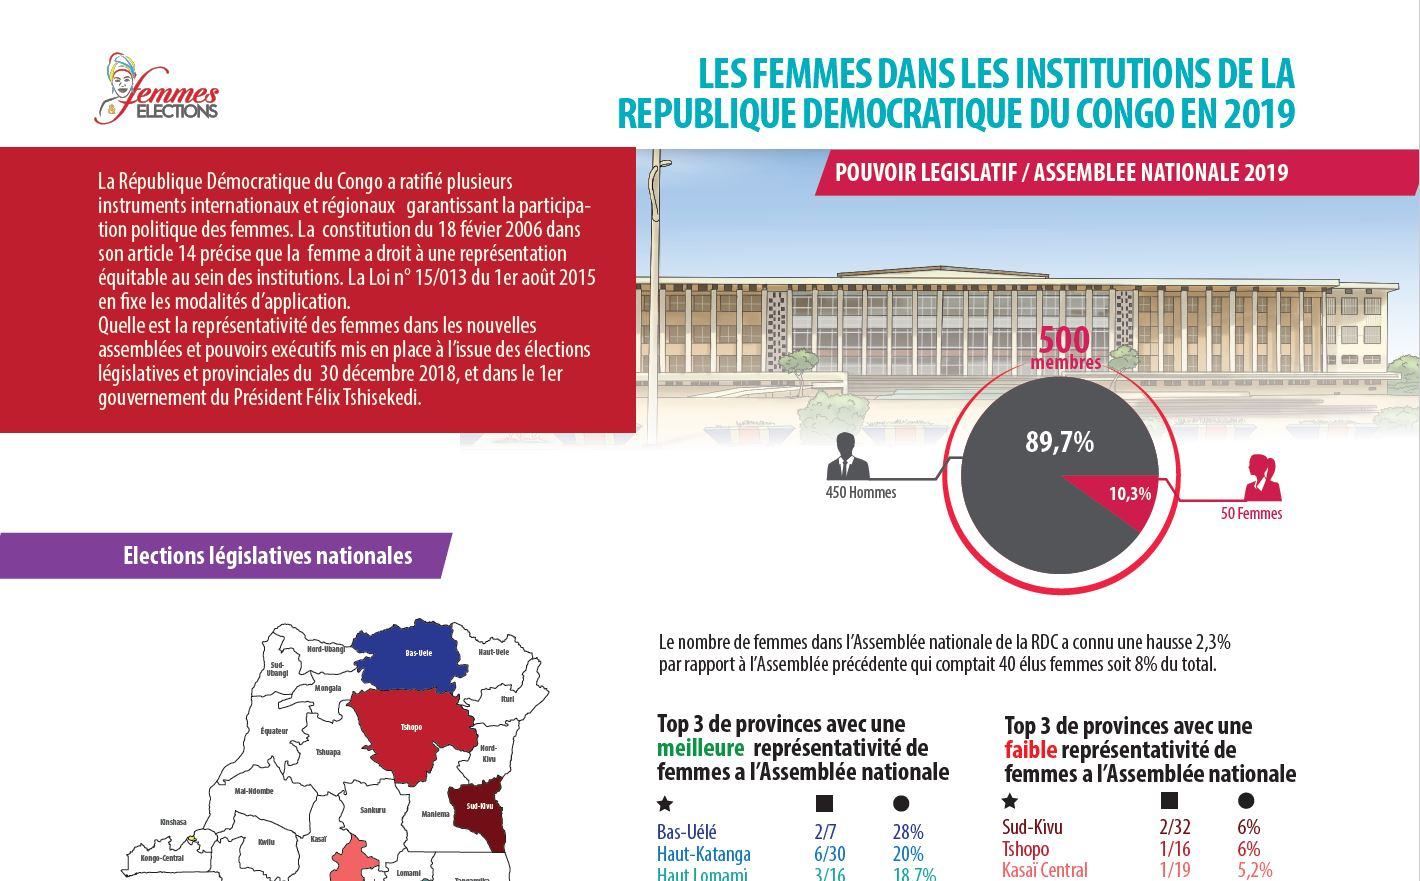 Les femmes dans les institutions de la République démocratique du Congo en 2019